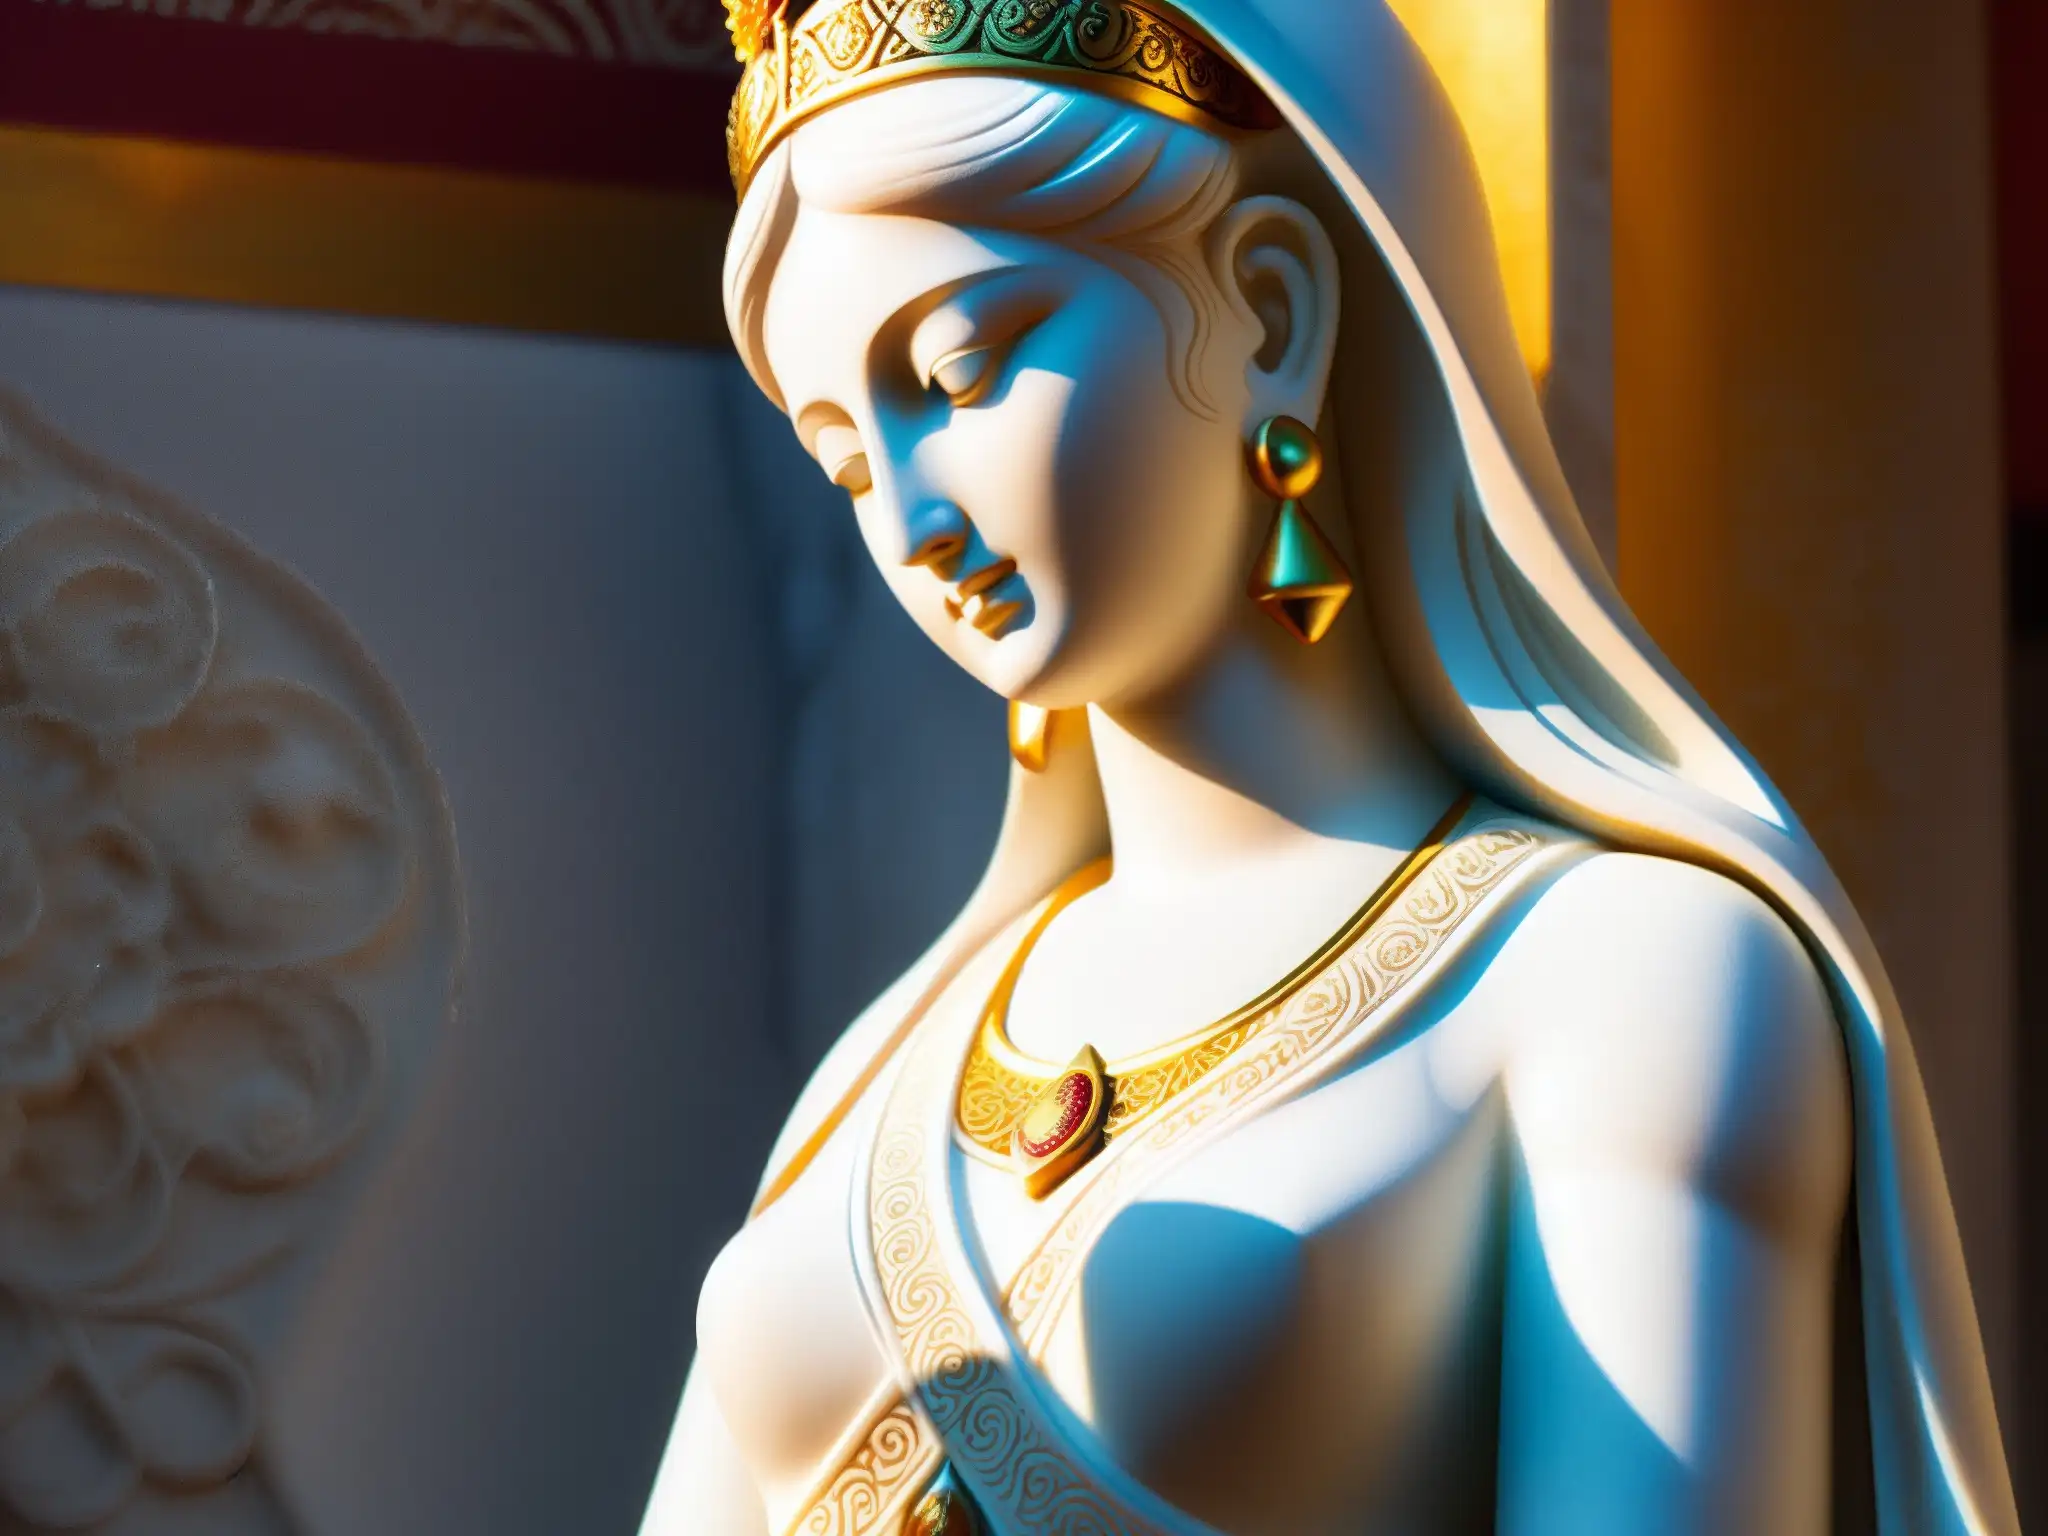 Una diosa blanca de mármol en Sri Lanka irradia misticismo, rodeada de ofrendas y luz dorada en un templo